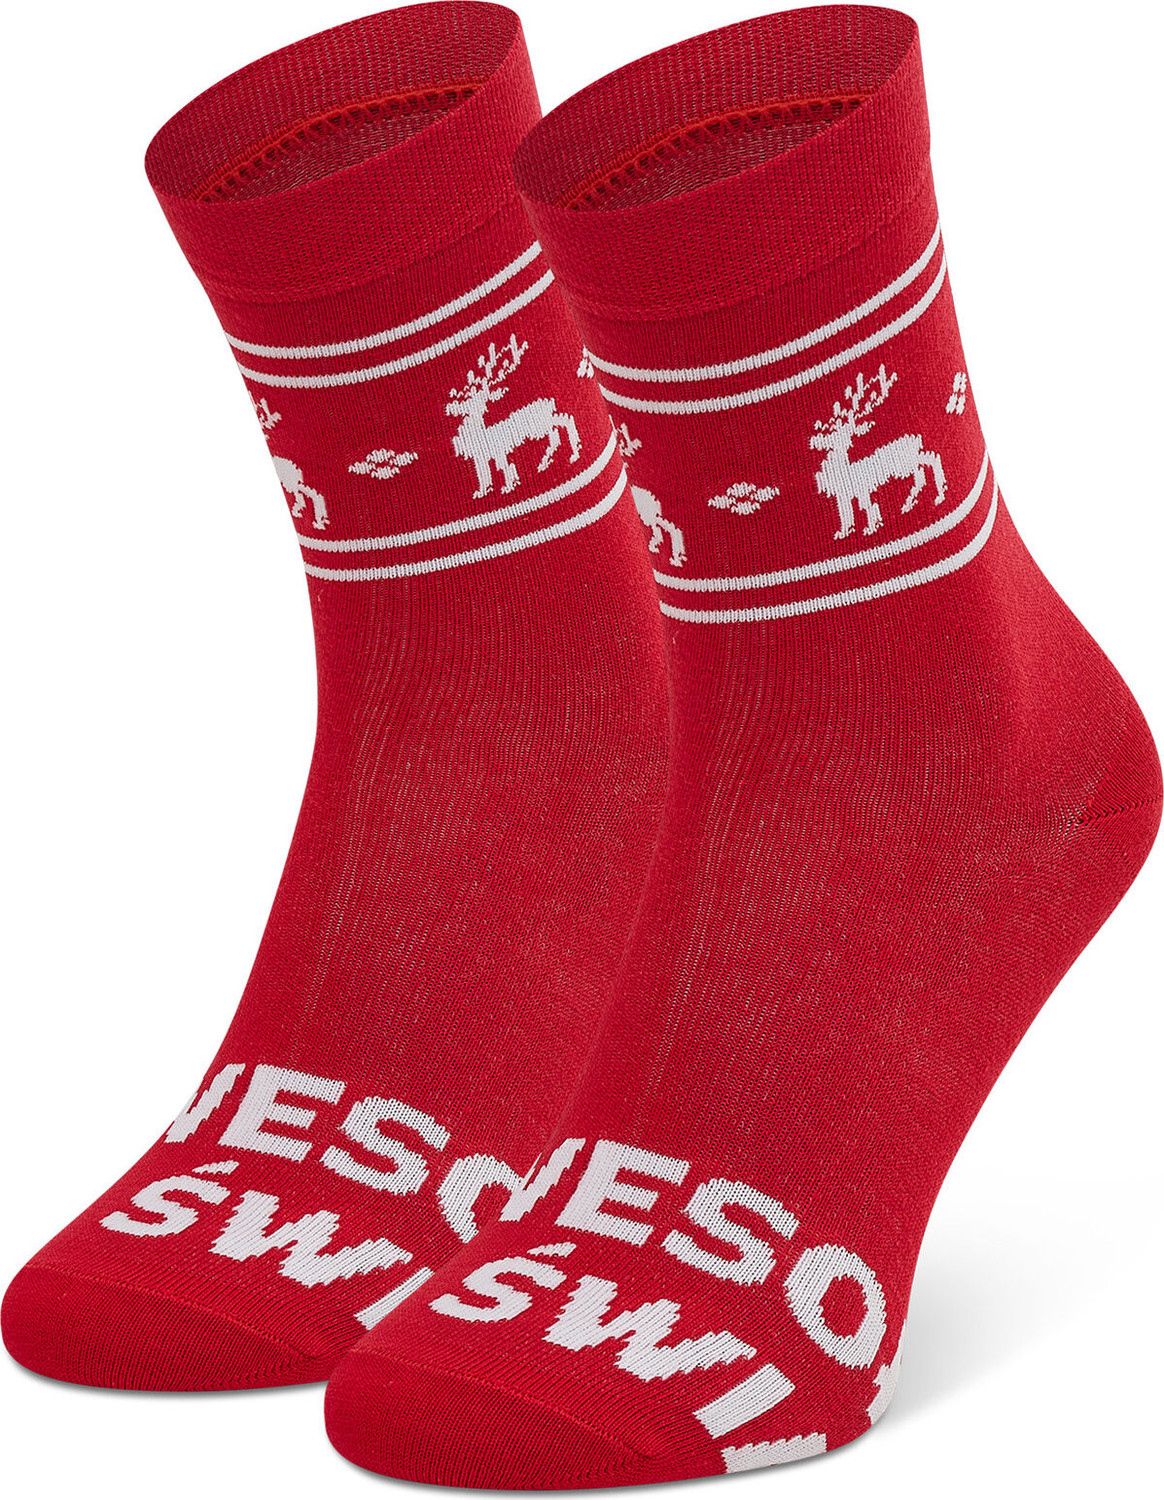 Dámské klasické ponožky Freakers LUJEL-RED Červená